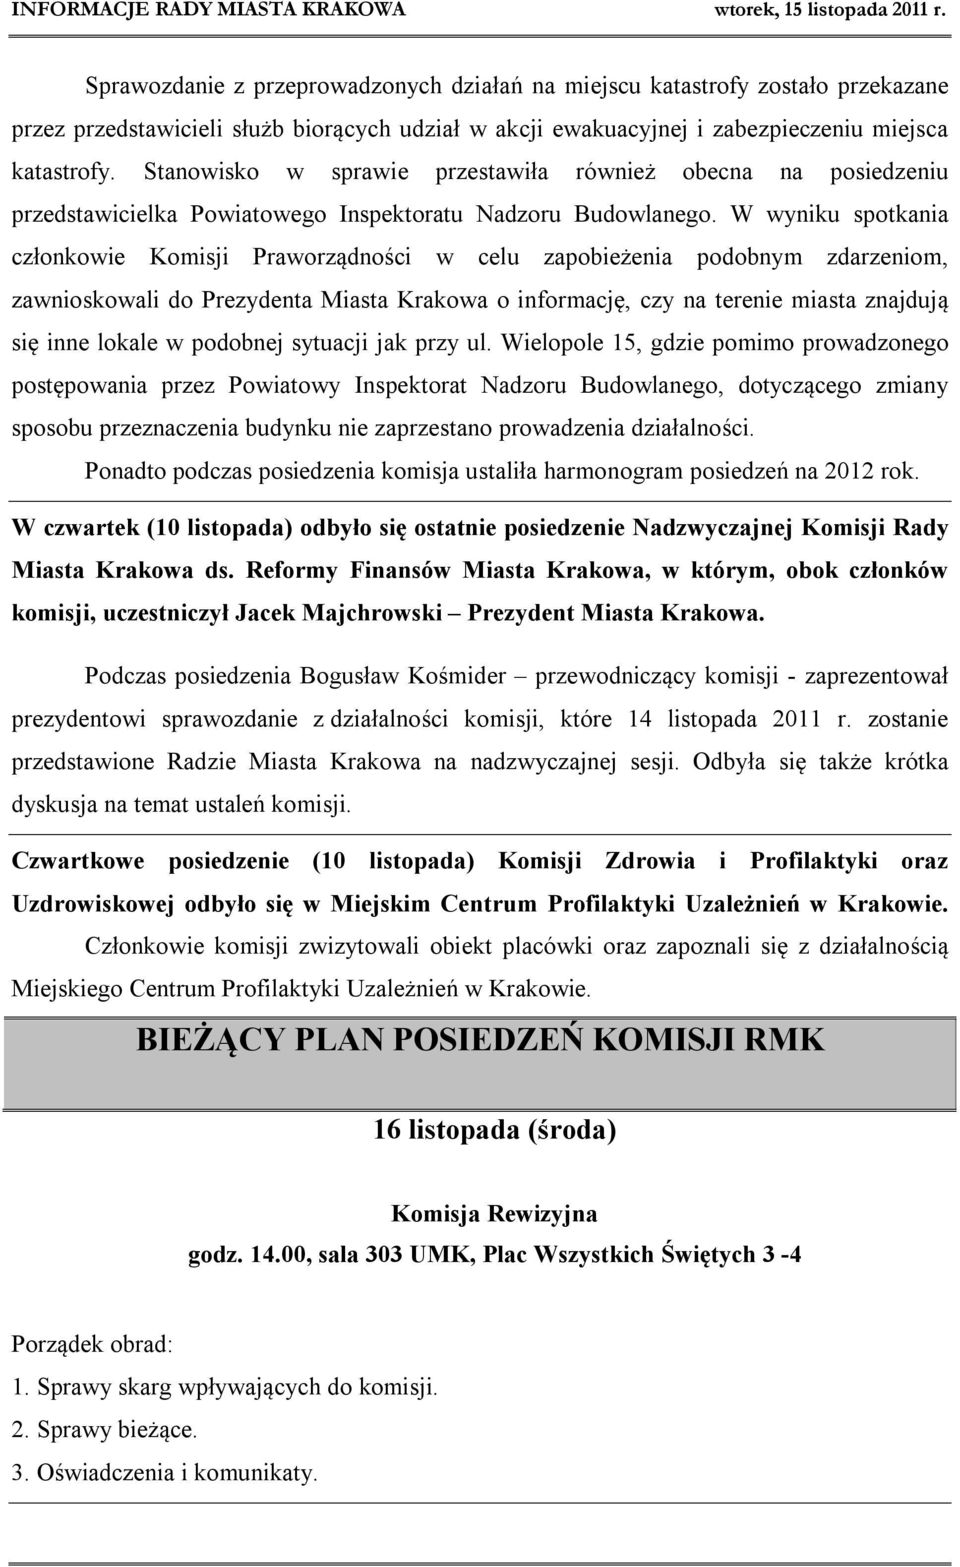 W wyniku spotkania członkowie Komisji Praworządności w celu zapobieżenia podobnym zdarzeniom, zawnioskowali do Prezydenta Miasta Krakowa o informację, czy na terenie miasta znajdują się inne lokale w